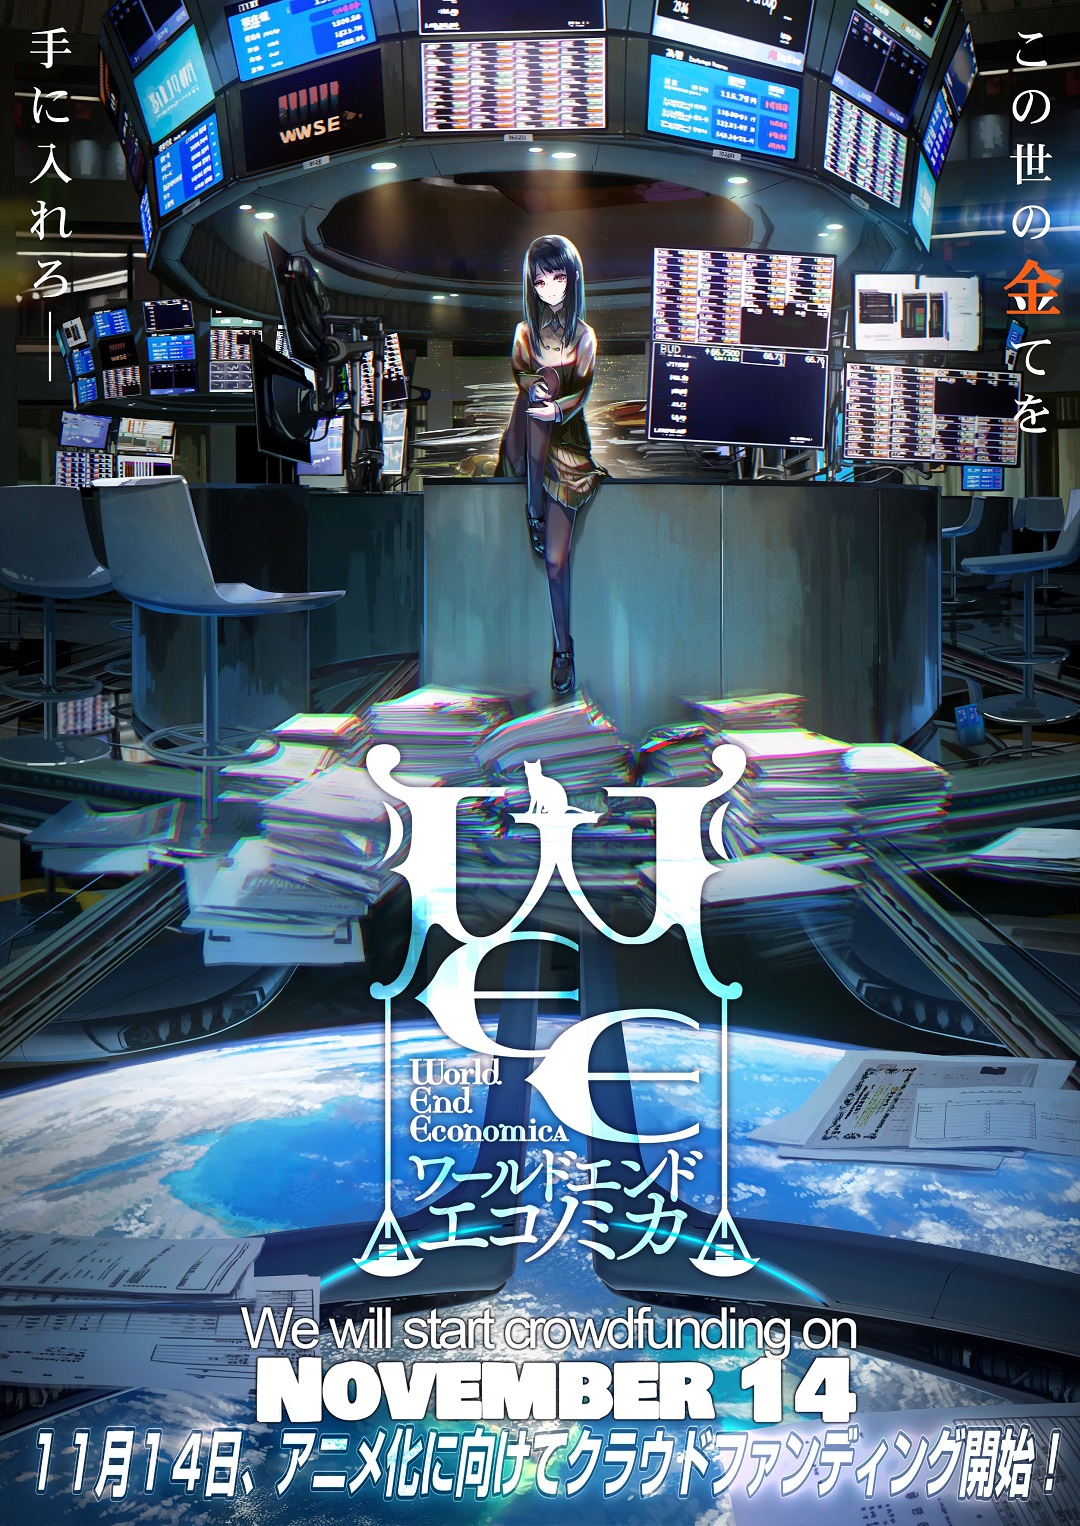 World End Economica Anime Announced - Niche Gamer